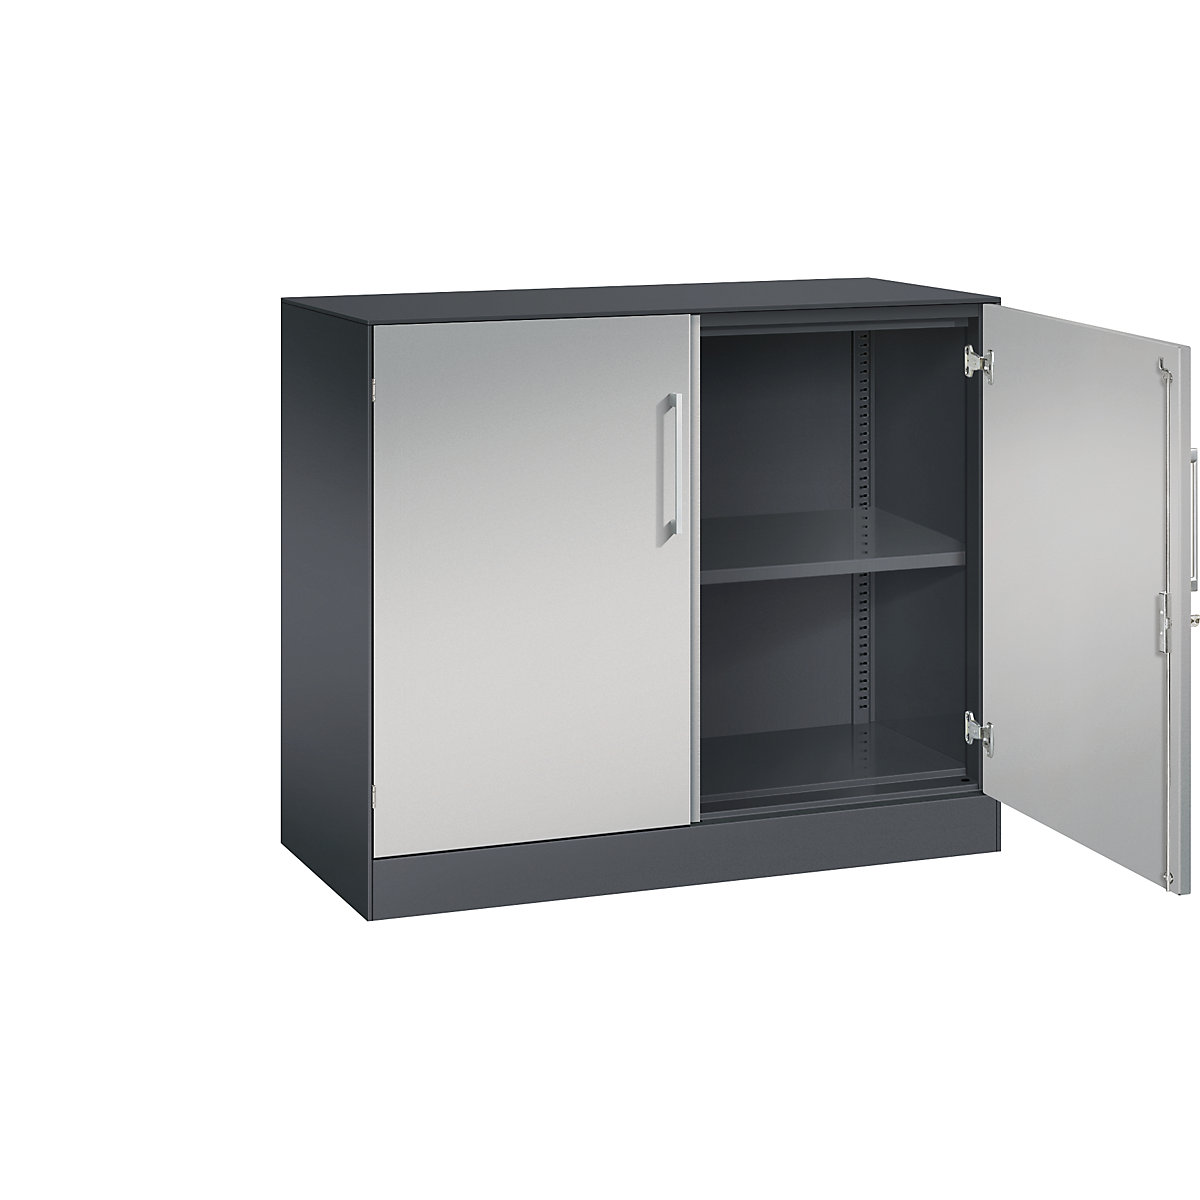 ASISTO double door cupboard, height 897 mm – C+P, width 1000 mm, 1 shelf, black grey/white aluminium-20